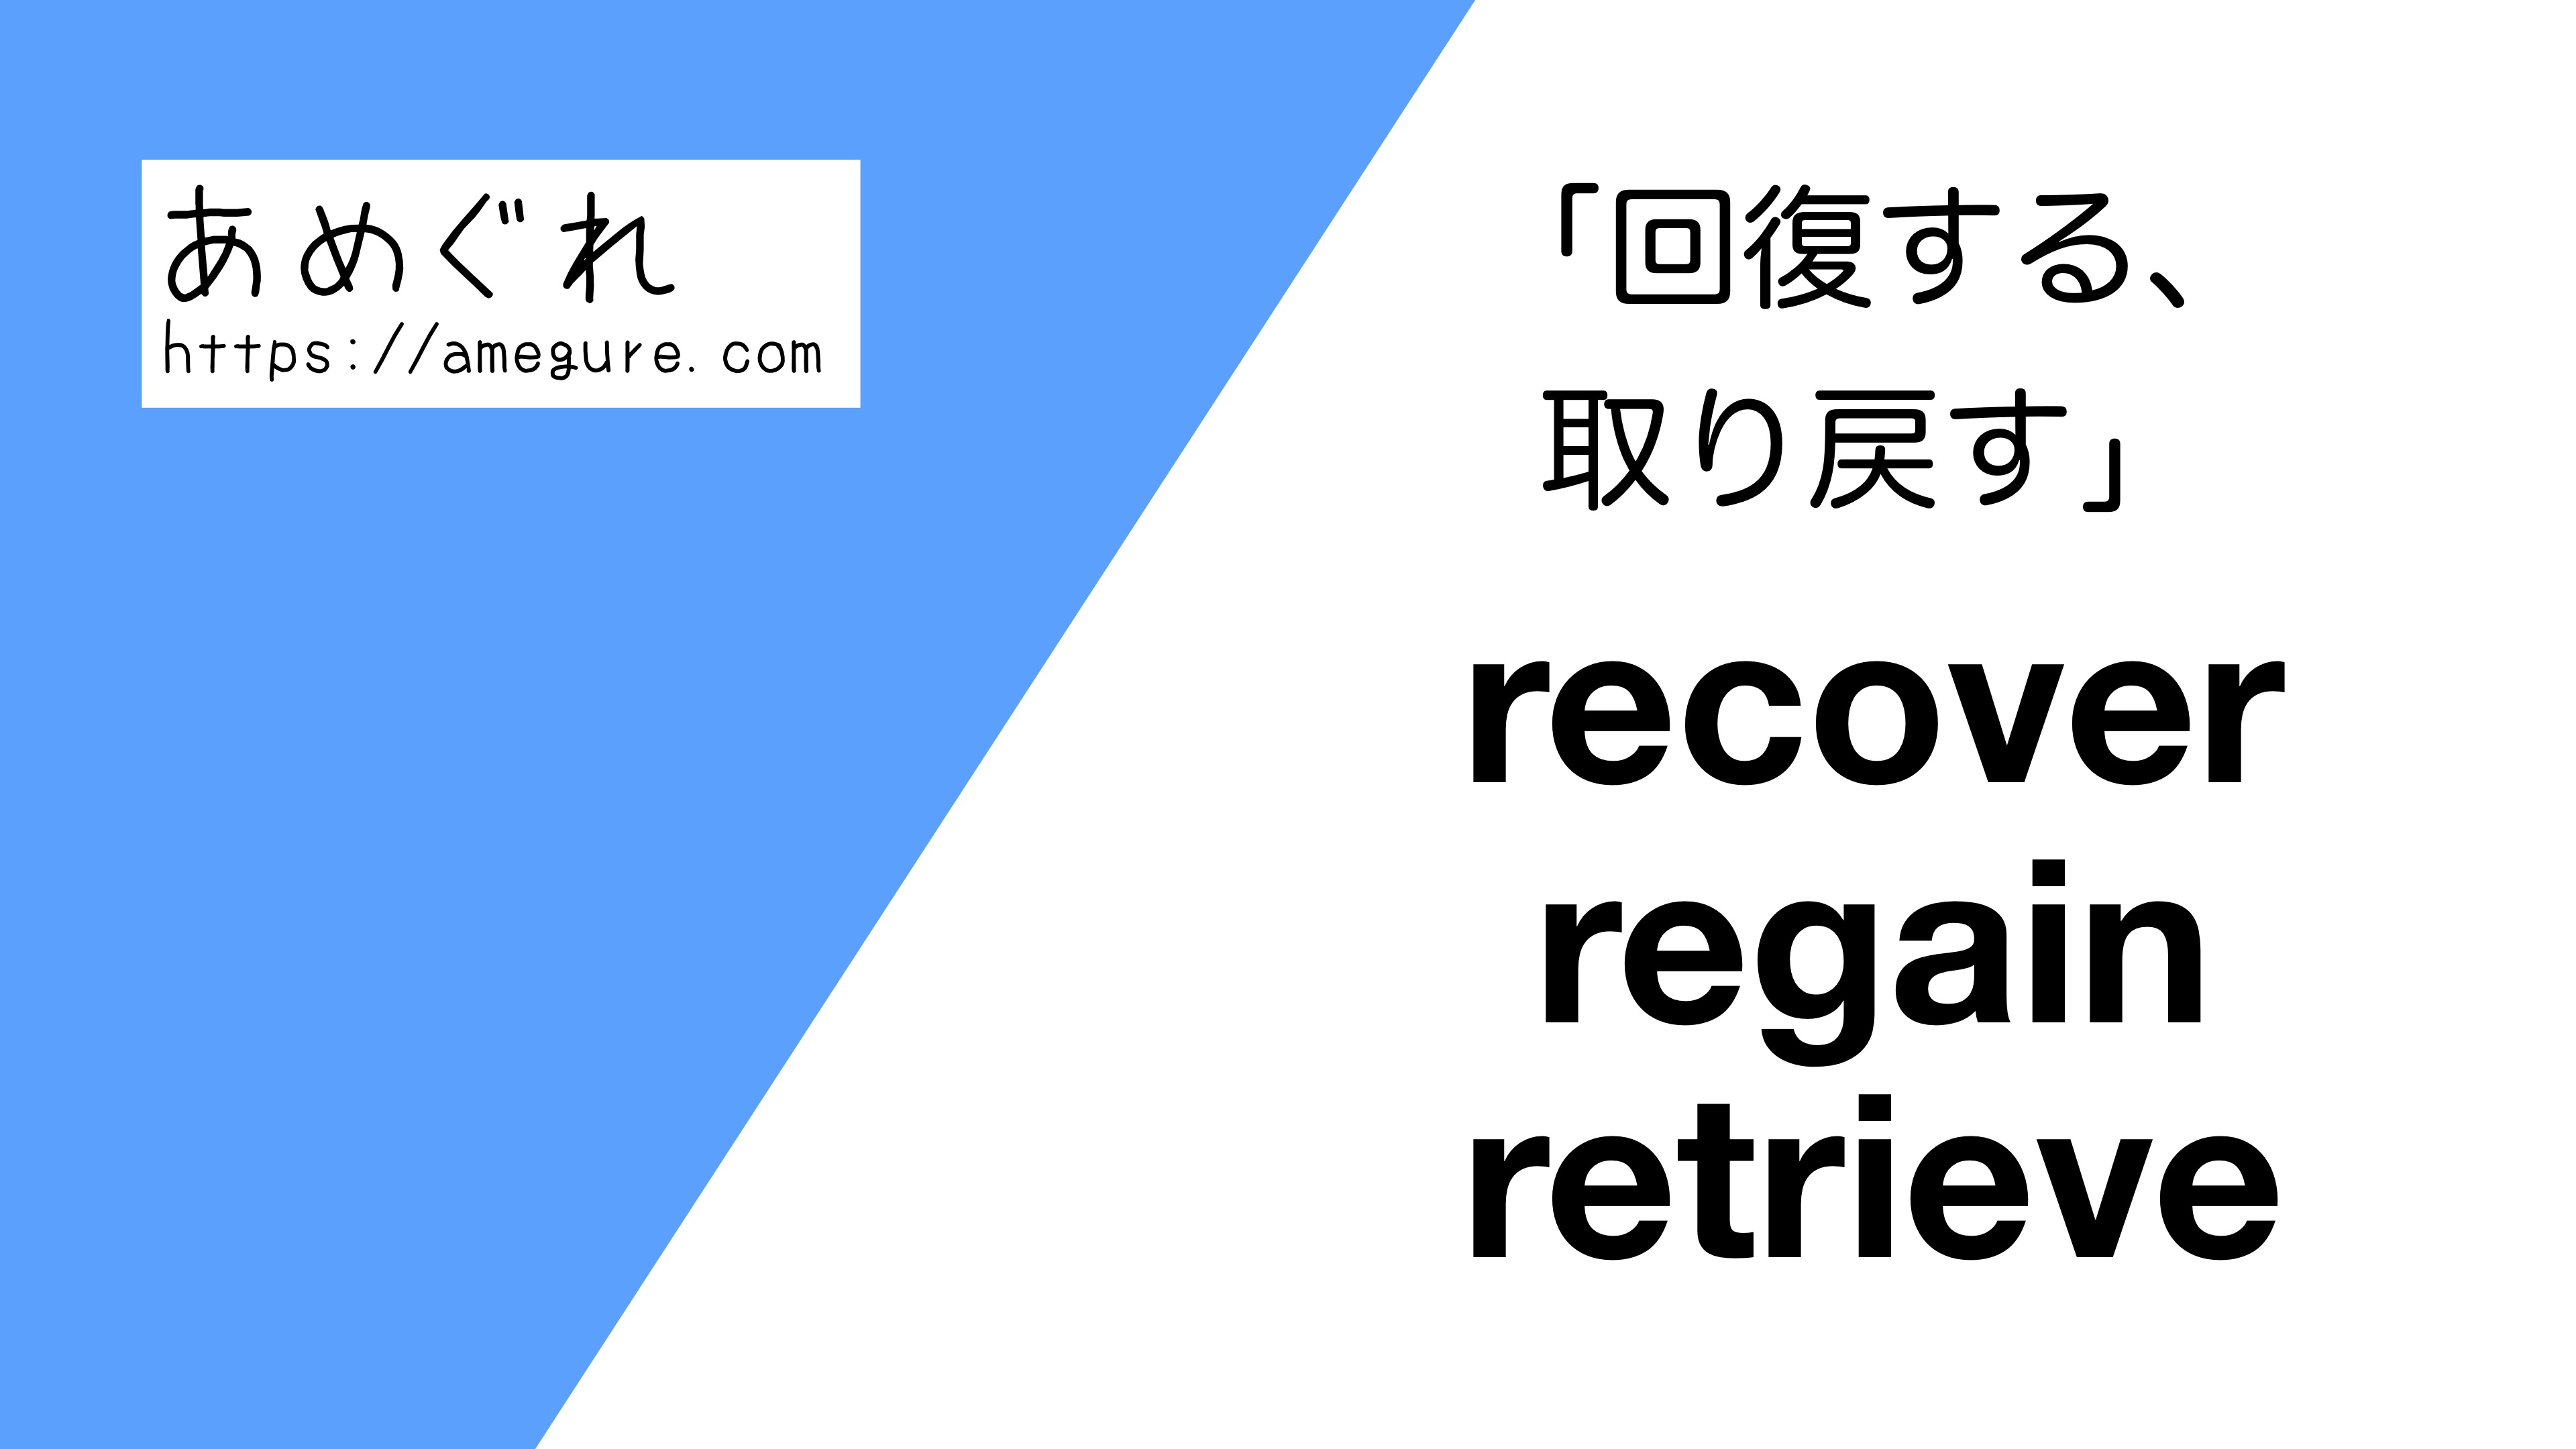 英語 Recover Regain Retrieve 回復する 取り戻す の意味の違いと使い分け